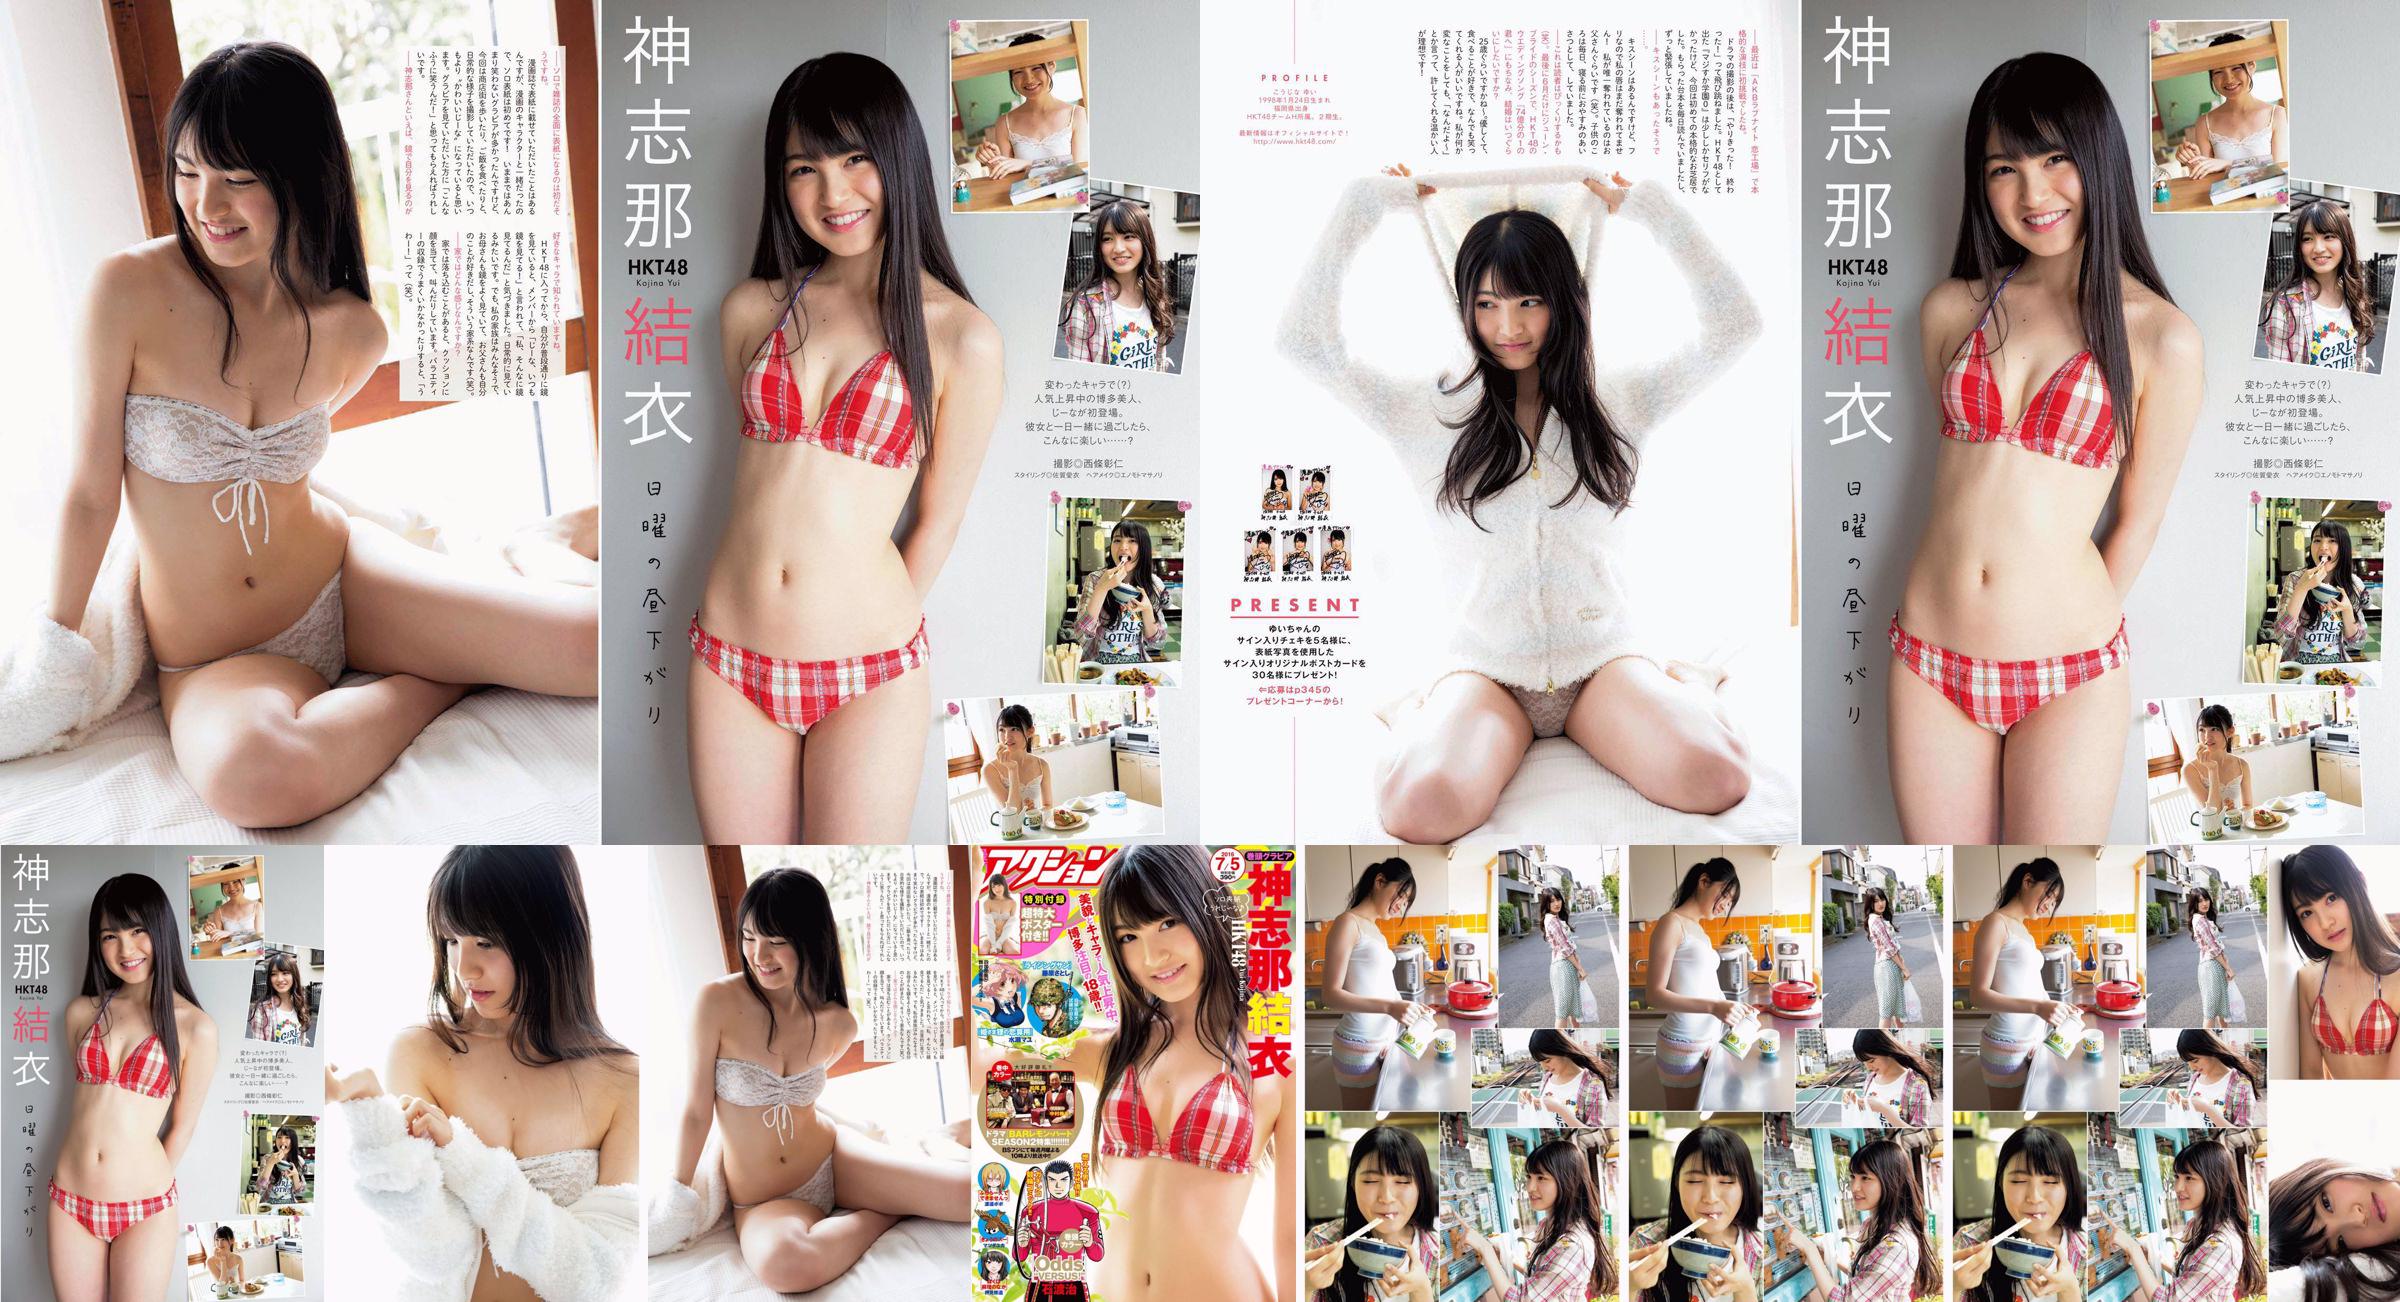 [Manga Action] Shinshina Yui 2016 No.13 Photo Magazine No.78c892 Page 4